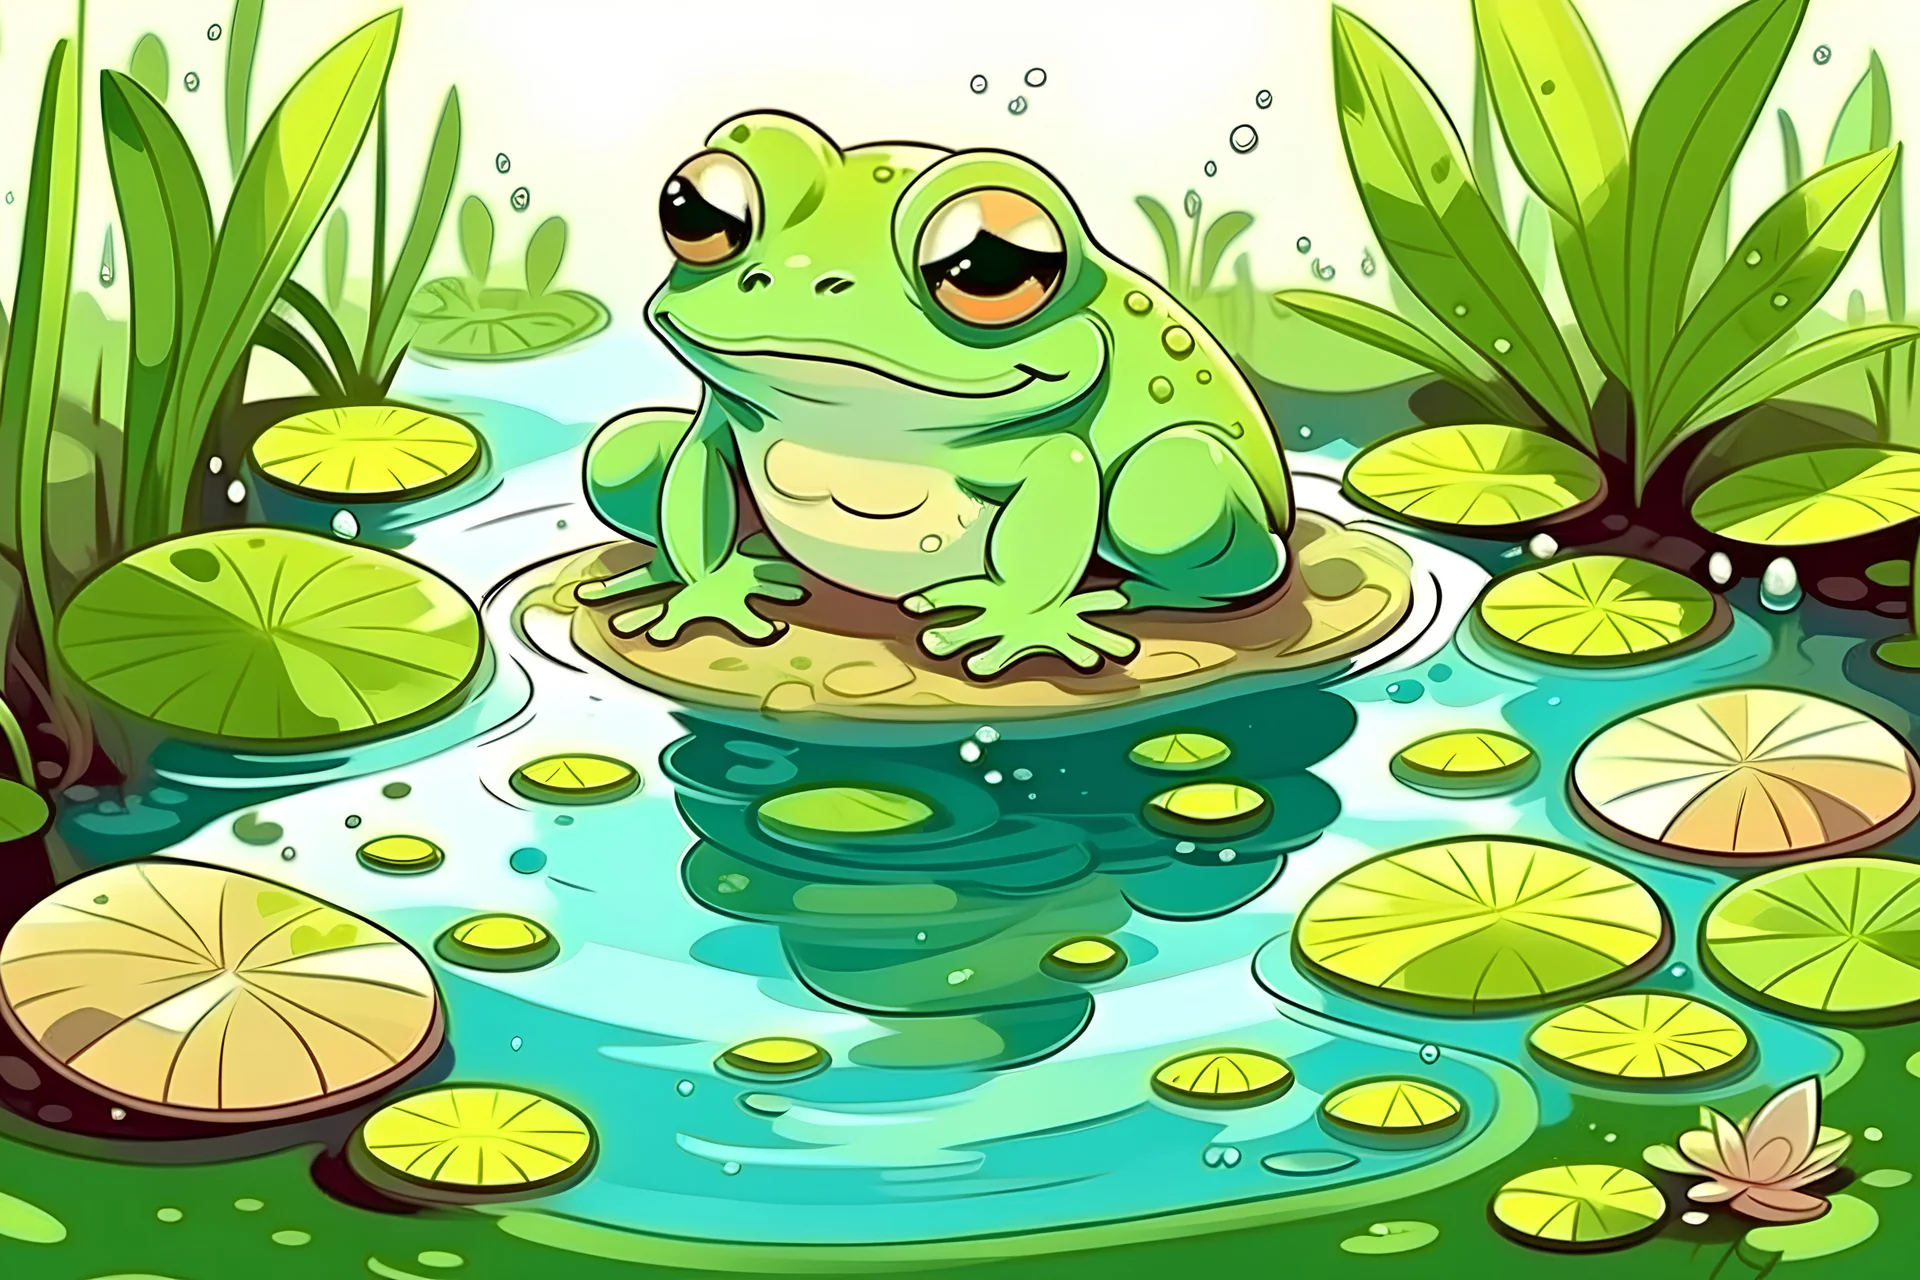 Cute frog cartoon Royalty Free Vector Image - VectorStock